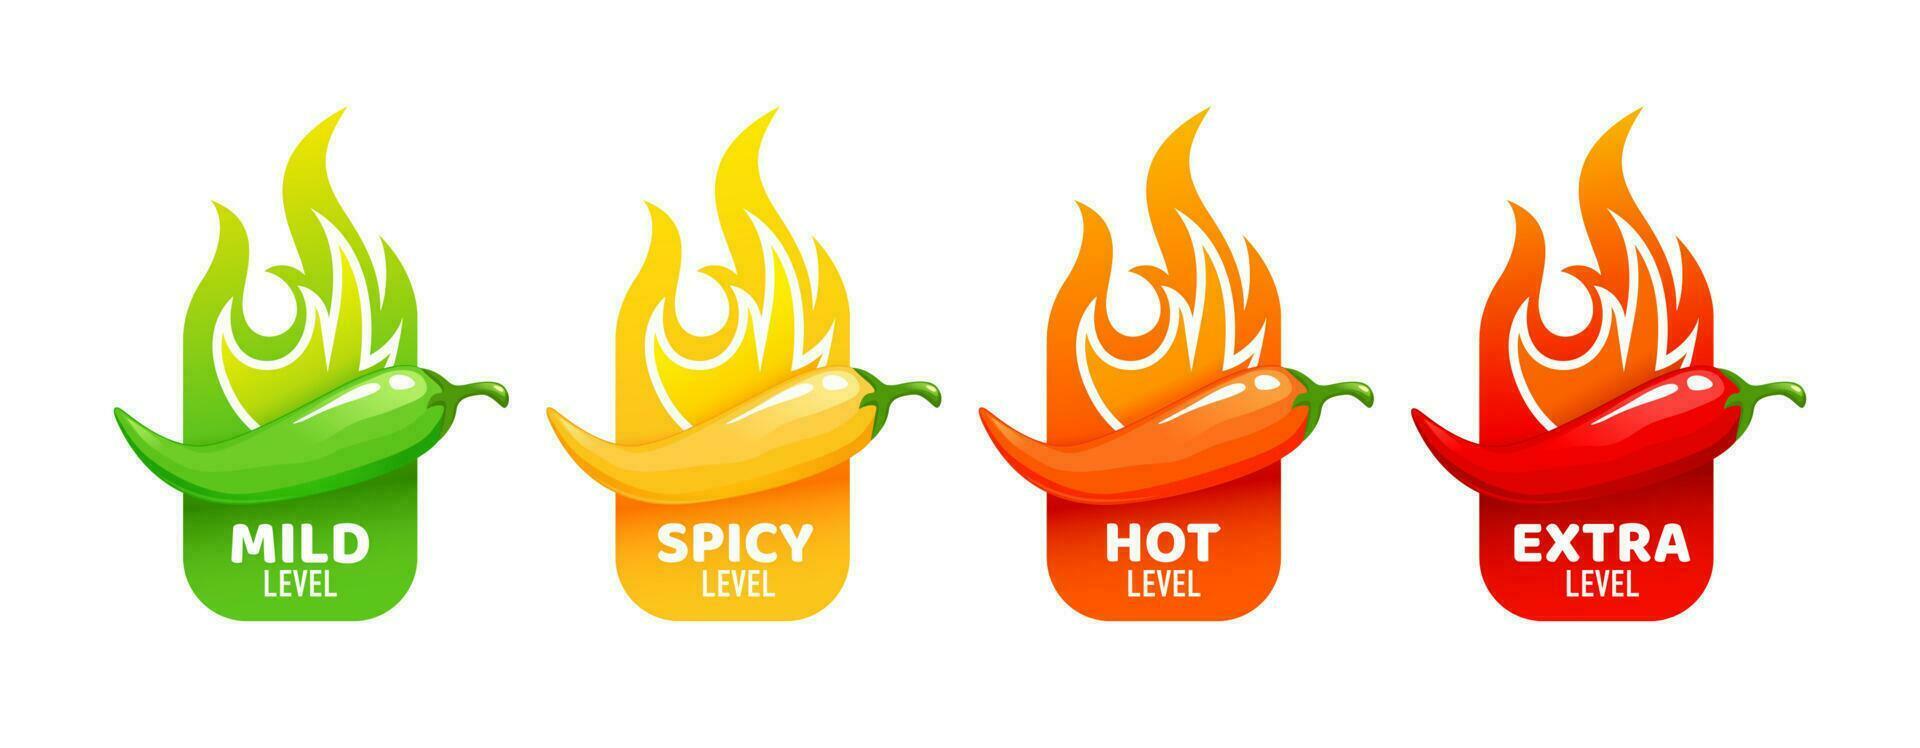 caliente picante nivel etiquetas, chile pimientos, fuego llamas vector